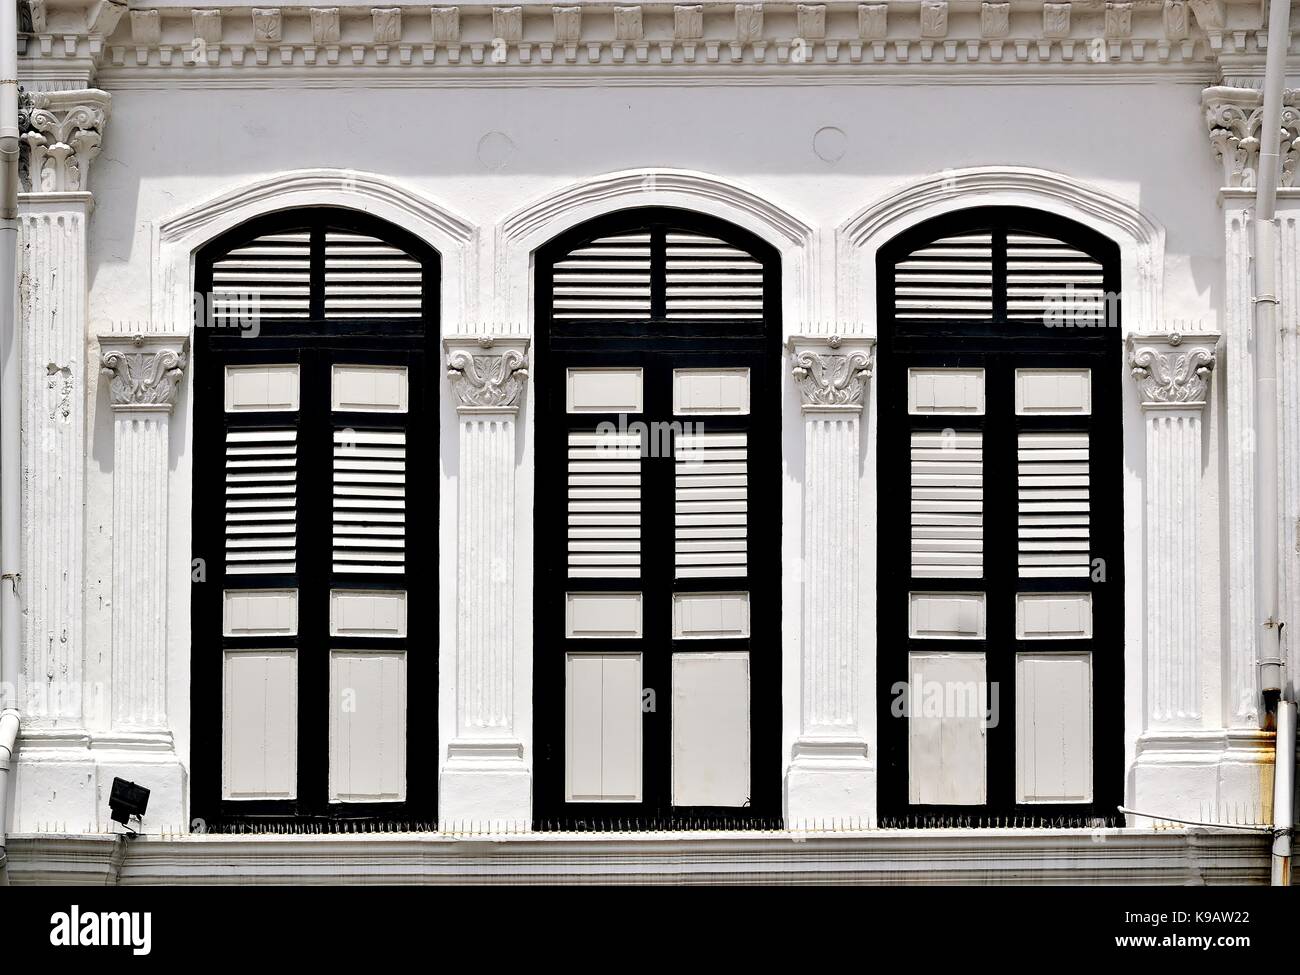 Tienda de Singapur tradicional exterior de la casa con ventanas arqueadas, persianas con tablillas de madera blanca y columnas corintias en el histórico duxton zona. Foto de stock